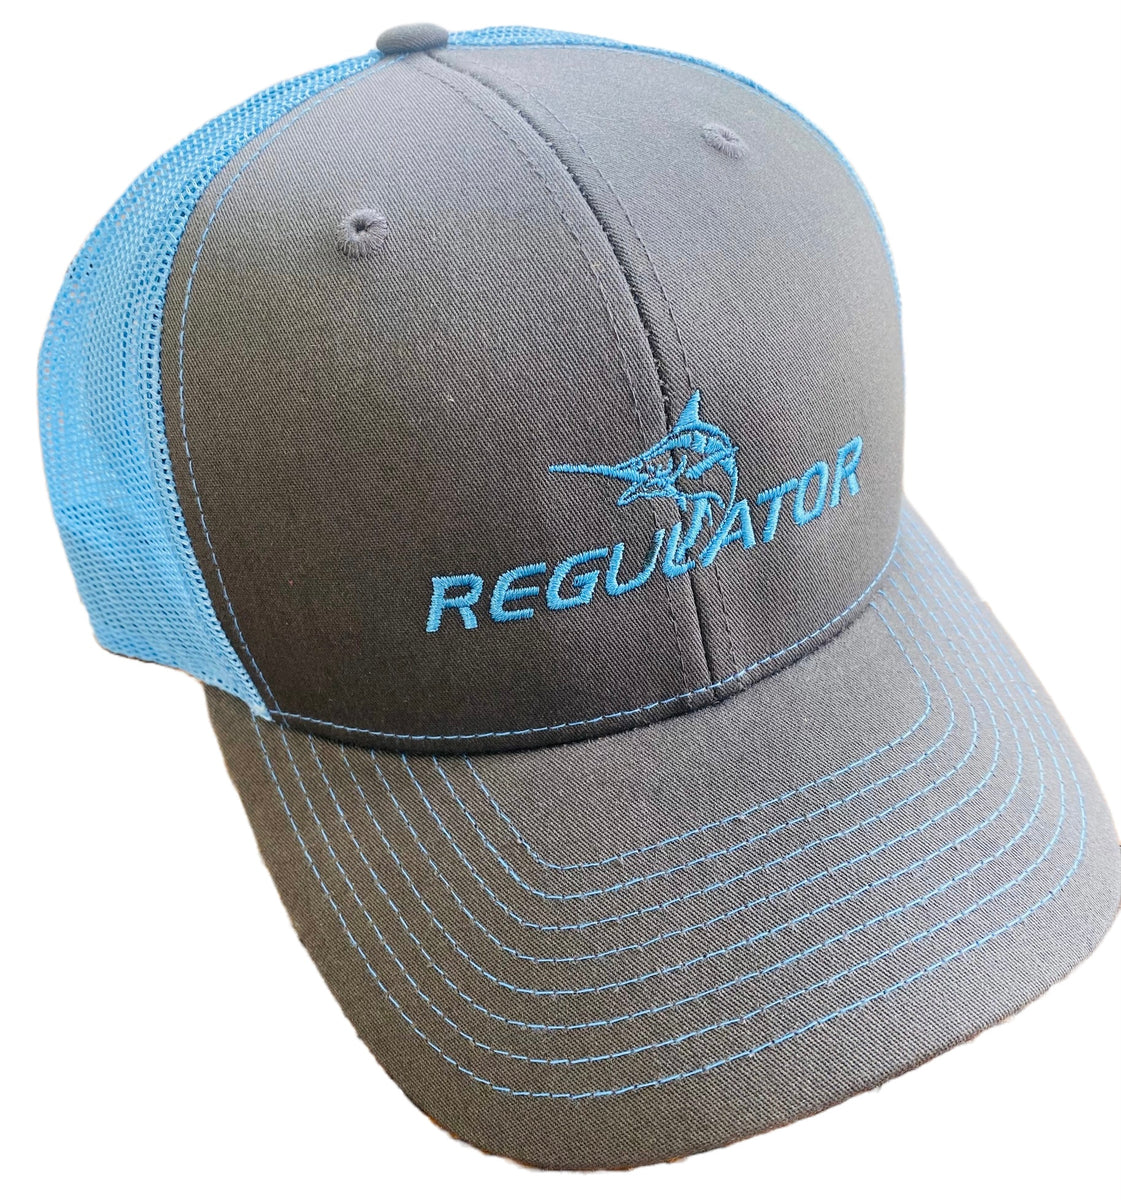 Regulator Marine Trucker Hat  Charcoal with Columbia Blue Mesh – Regulator  Marine Gear Store